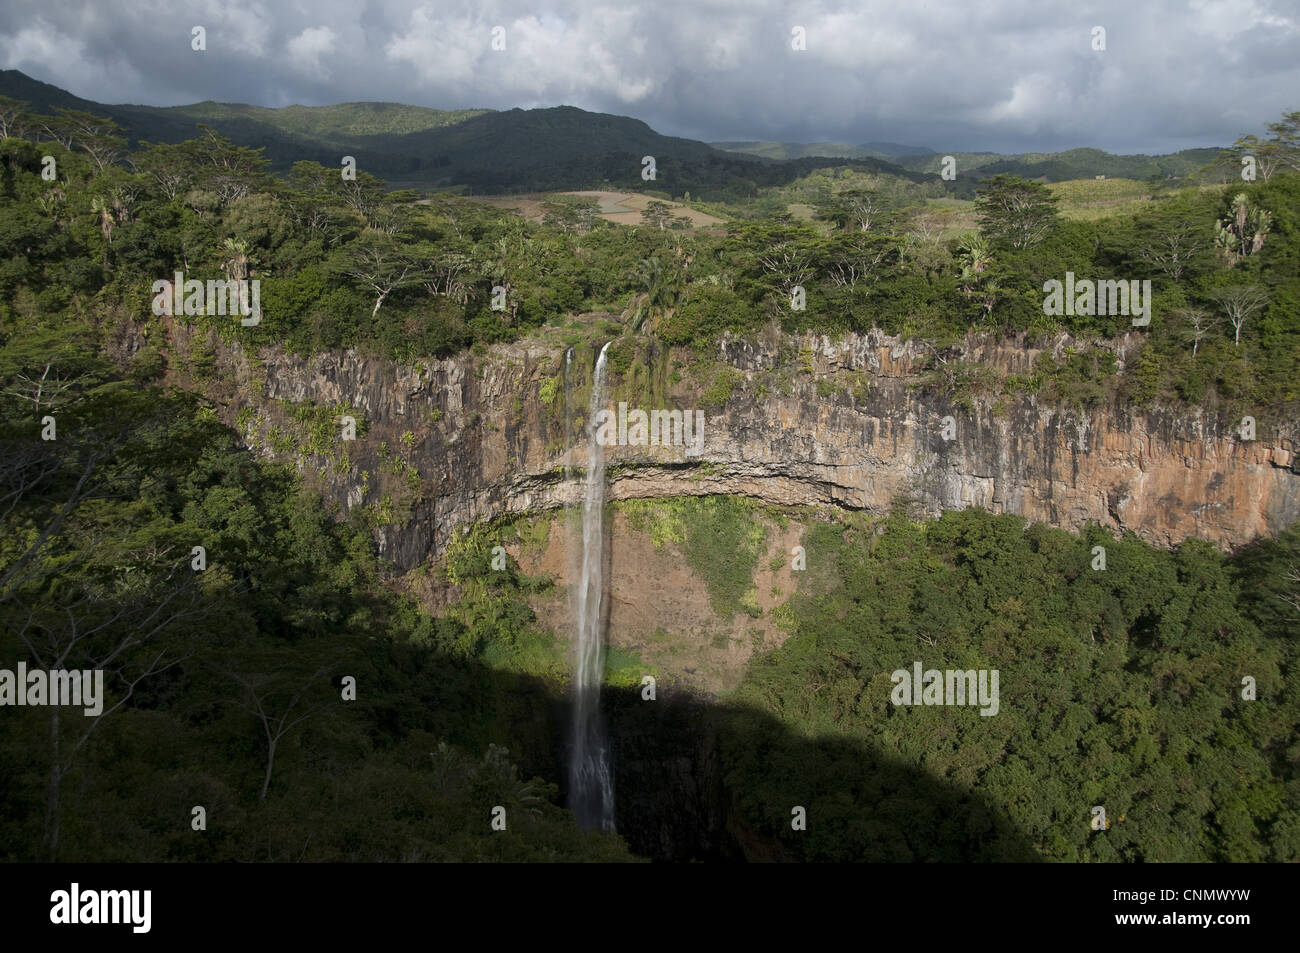 Cascada de Chamarel desde San Denis y Viande Salee Ríos, Black River Gorges N.P., distrito de Black River, al oeste Mauricio Foto de stock